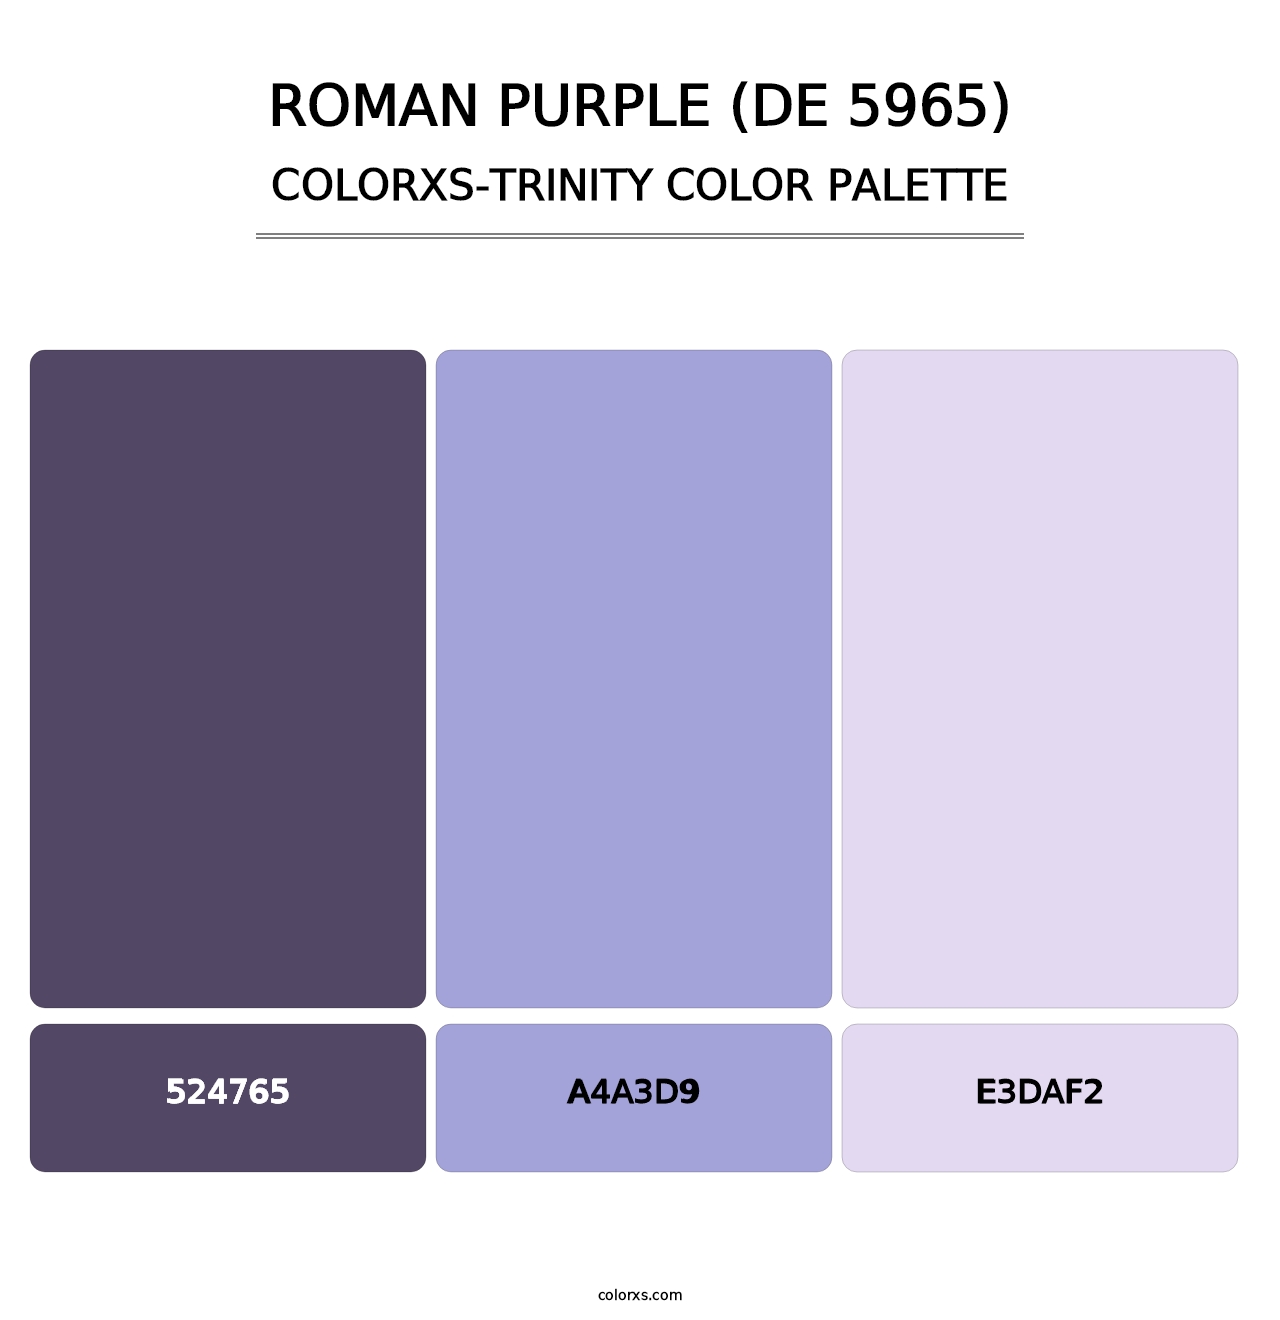 Roman Purple (DE 5965) - Colorxs Trinity Palette